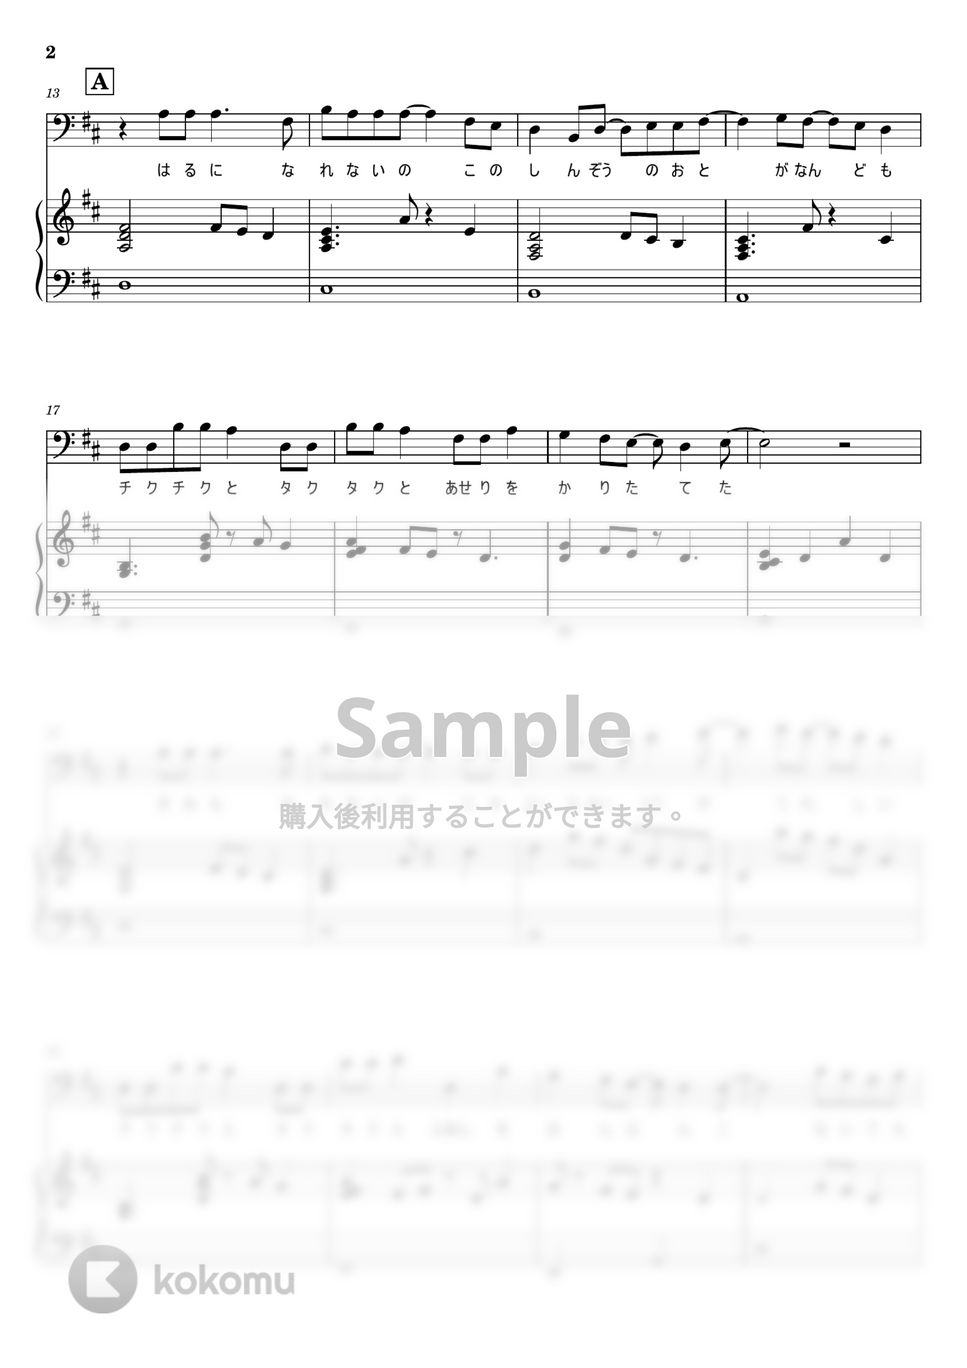 sumika - Starting Over (ピアノ弾き語り) by otyazuke